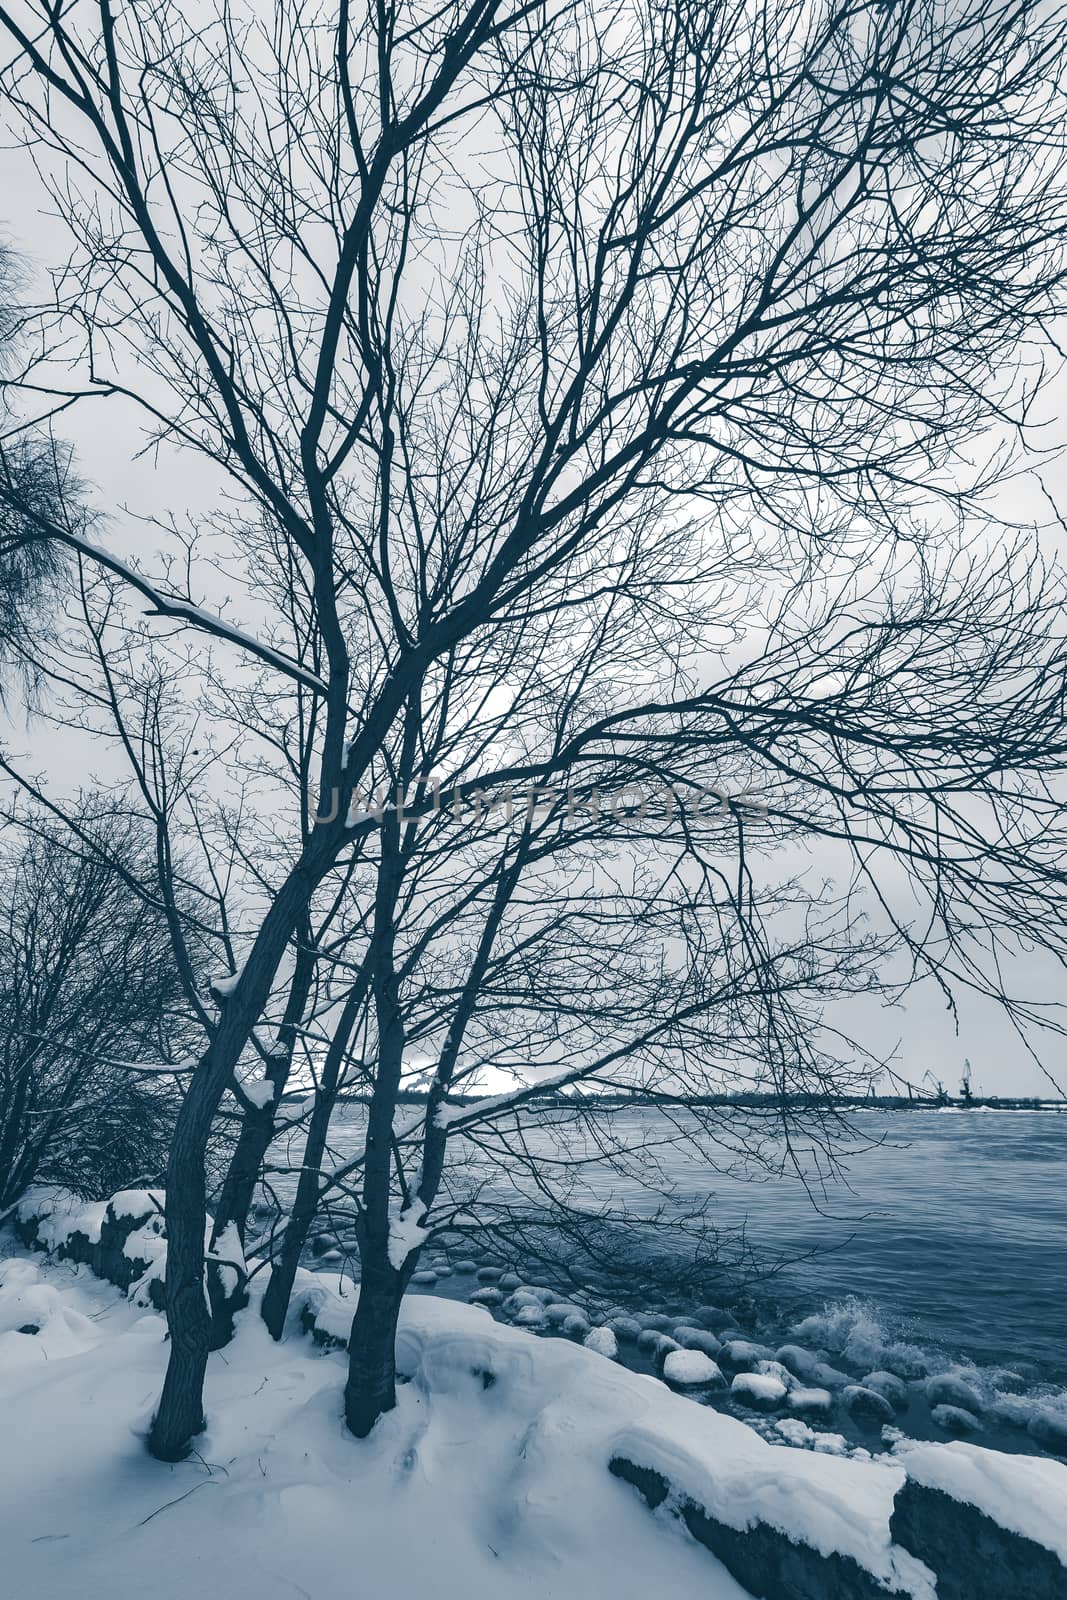 Snowy winter landscape by sengnsp